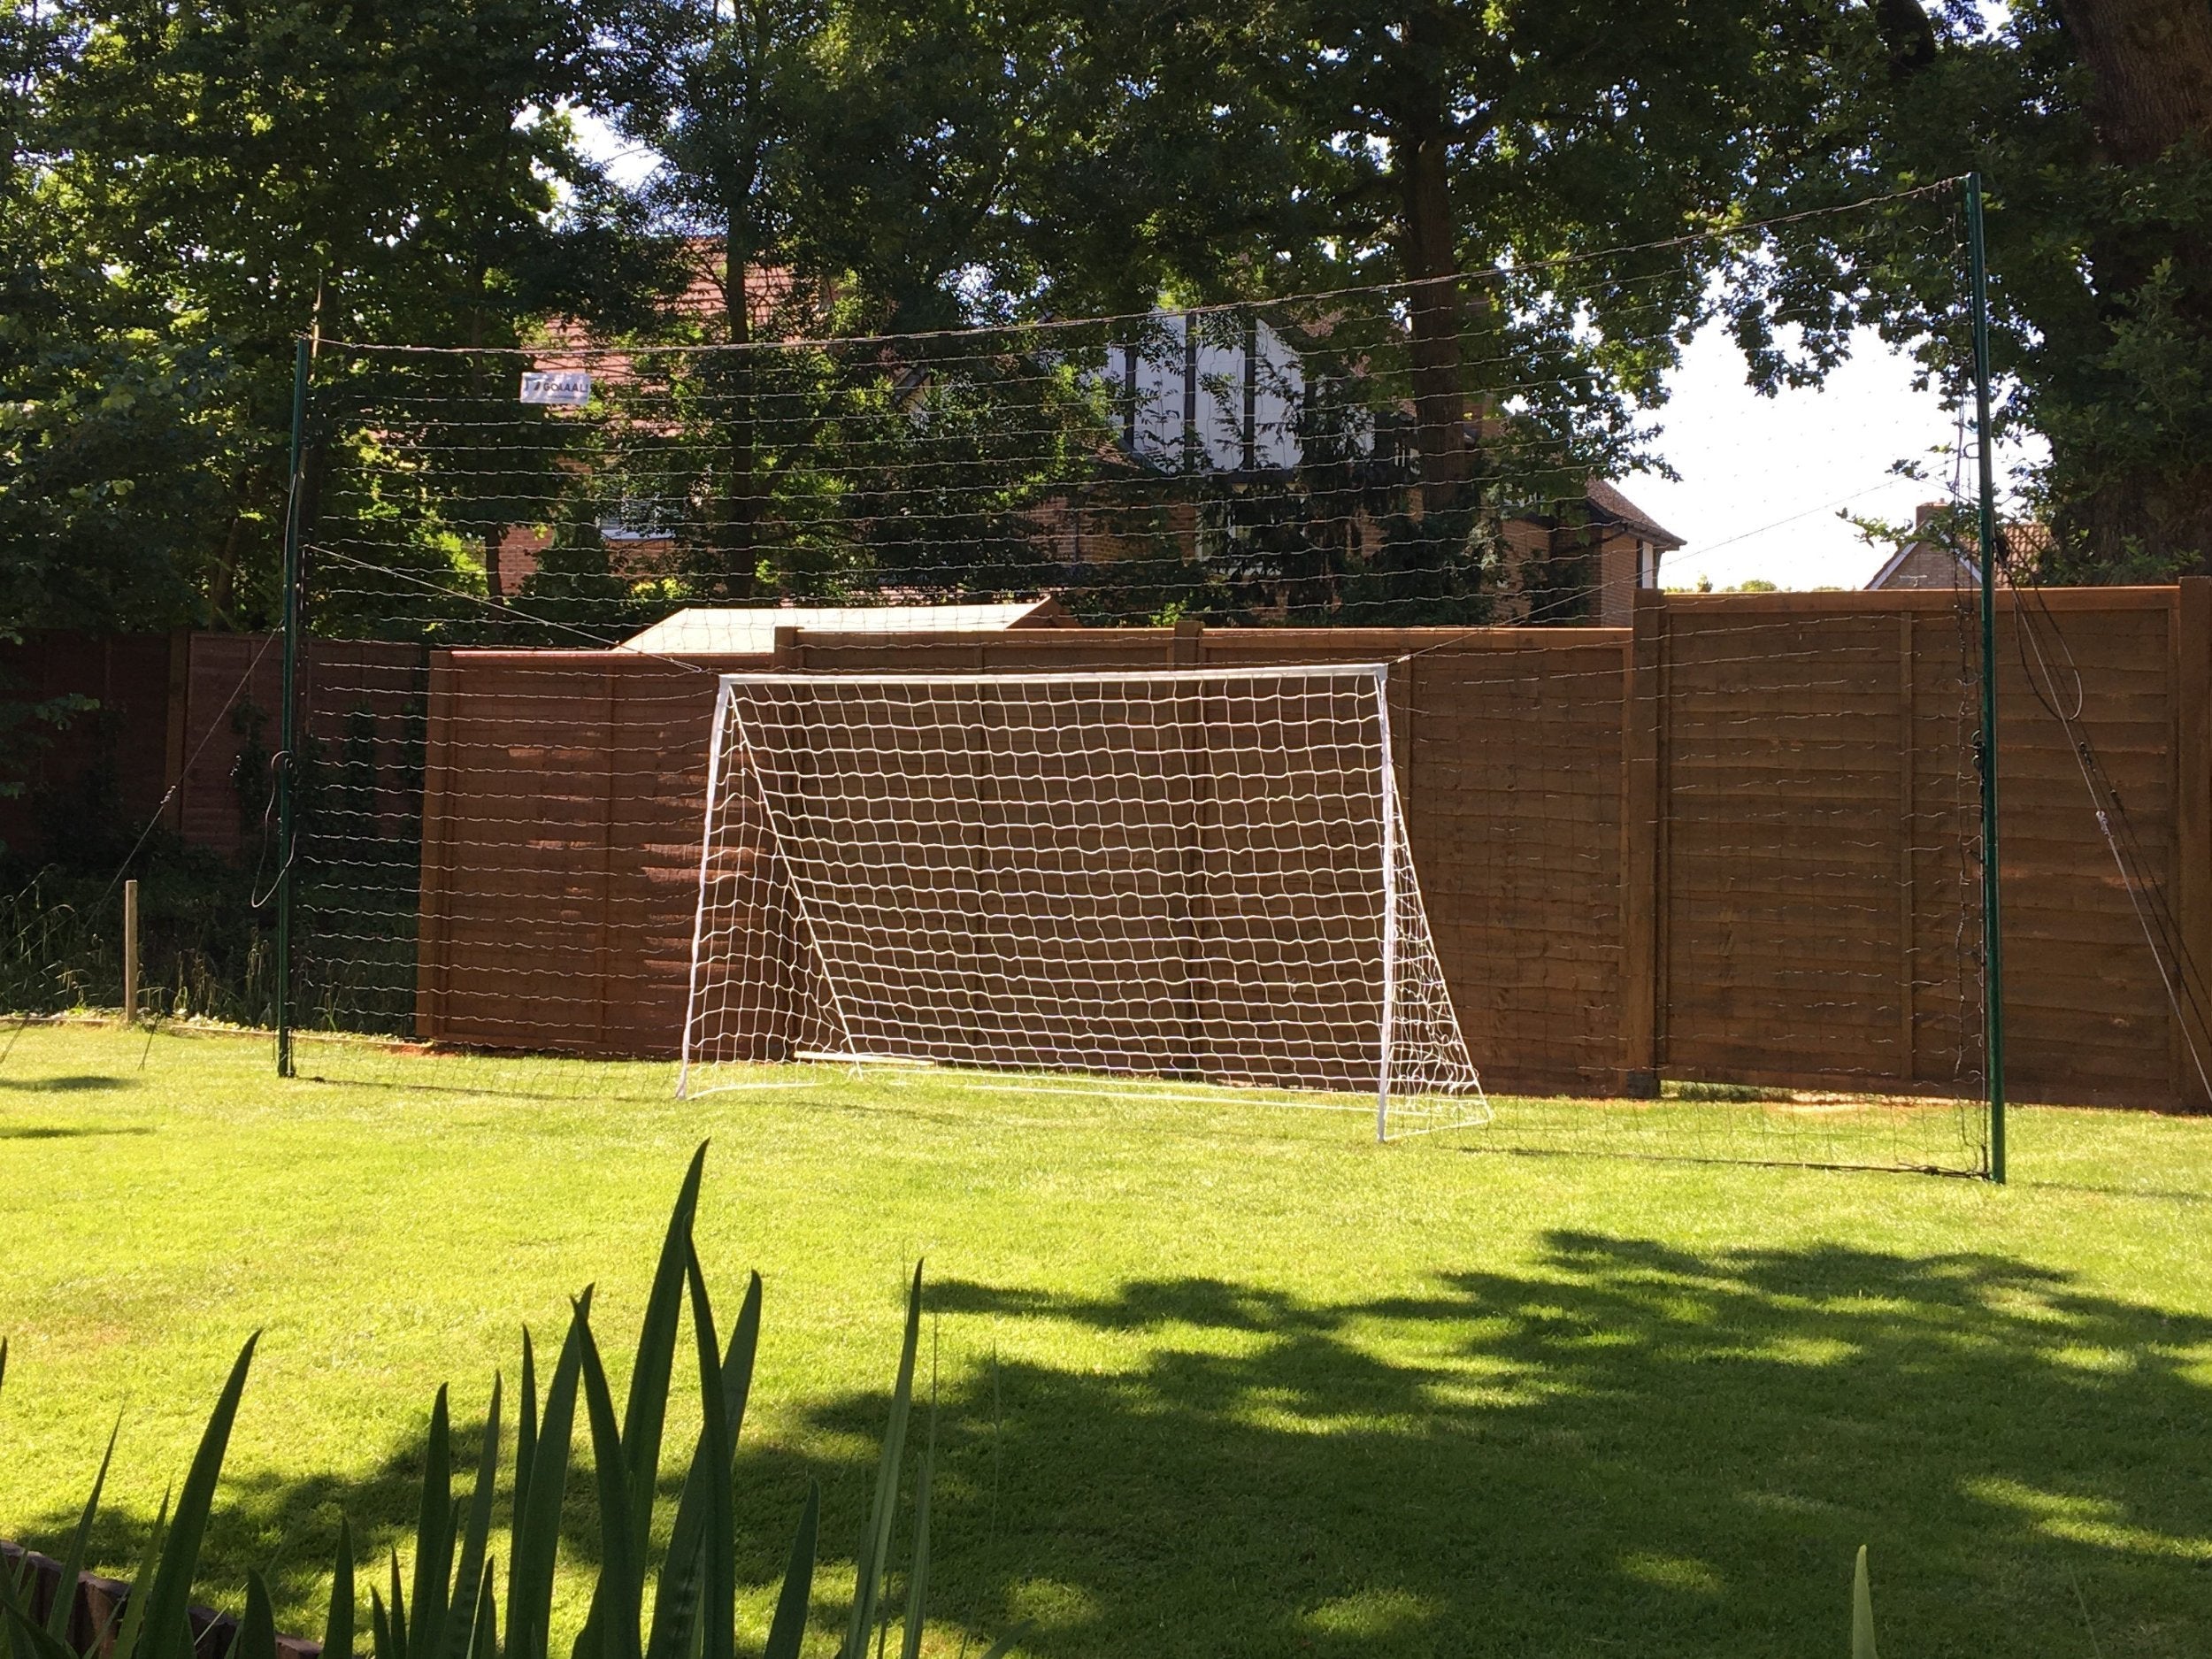 Installer une cage de foot dans le jardin ou la cour - je fais du